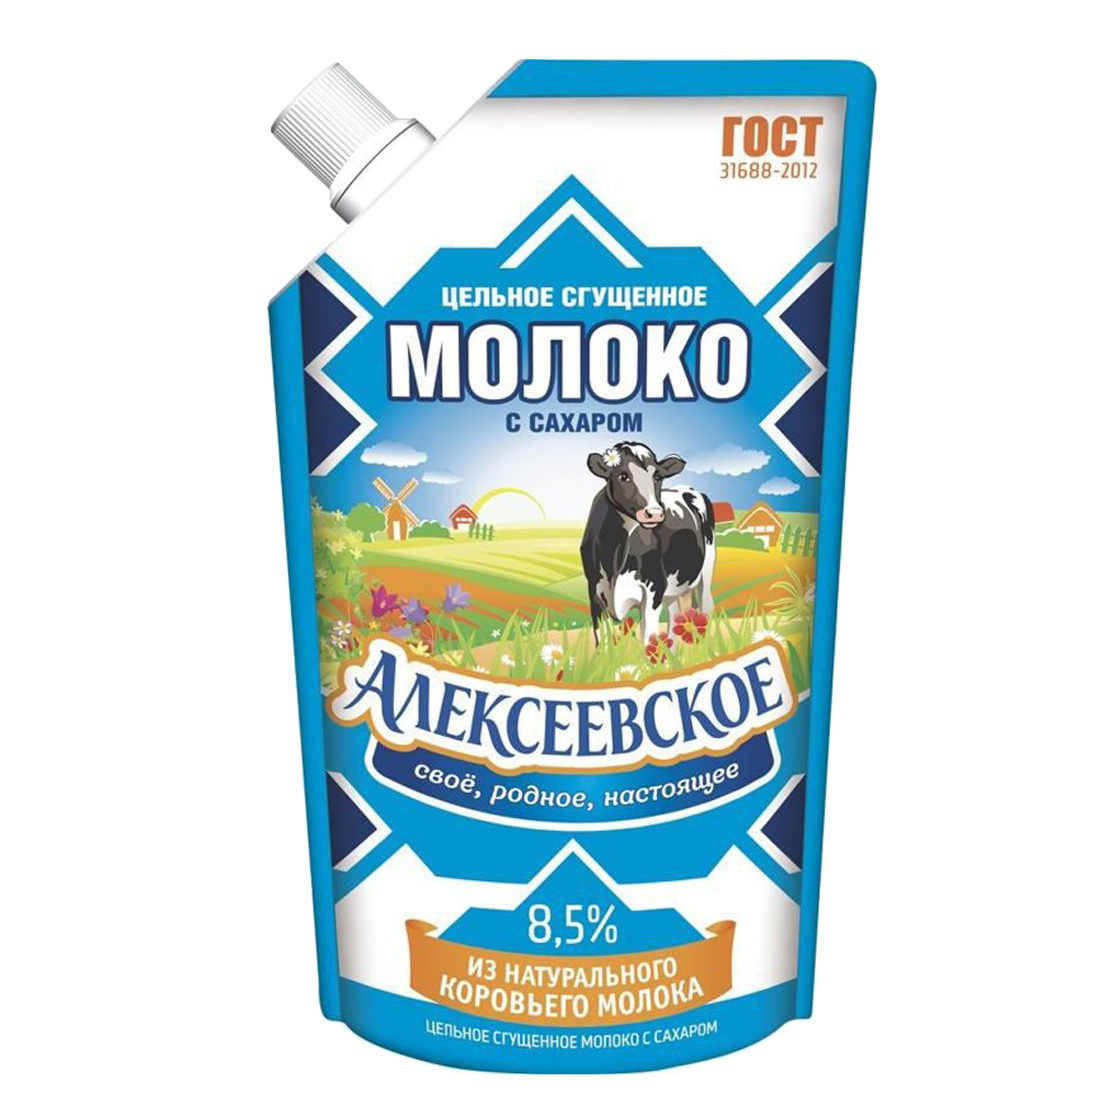 Молоко сгущенное Алексеевское 8,5% 270 г молоко сгущенное алексеевское 8 5% 270 г